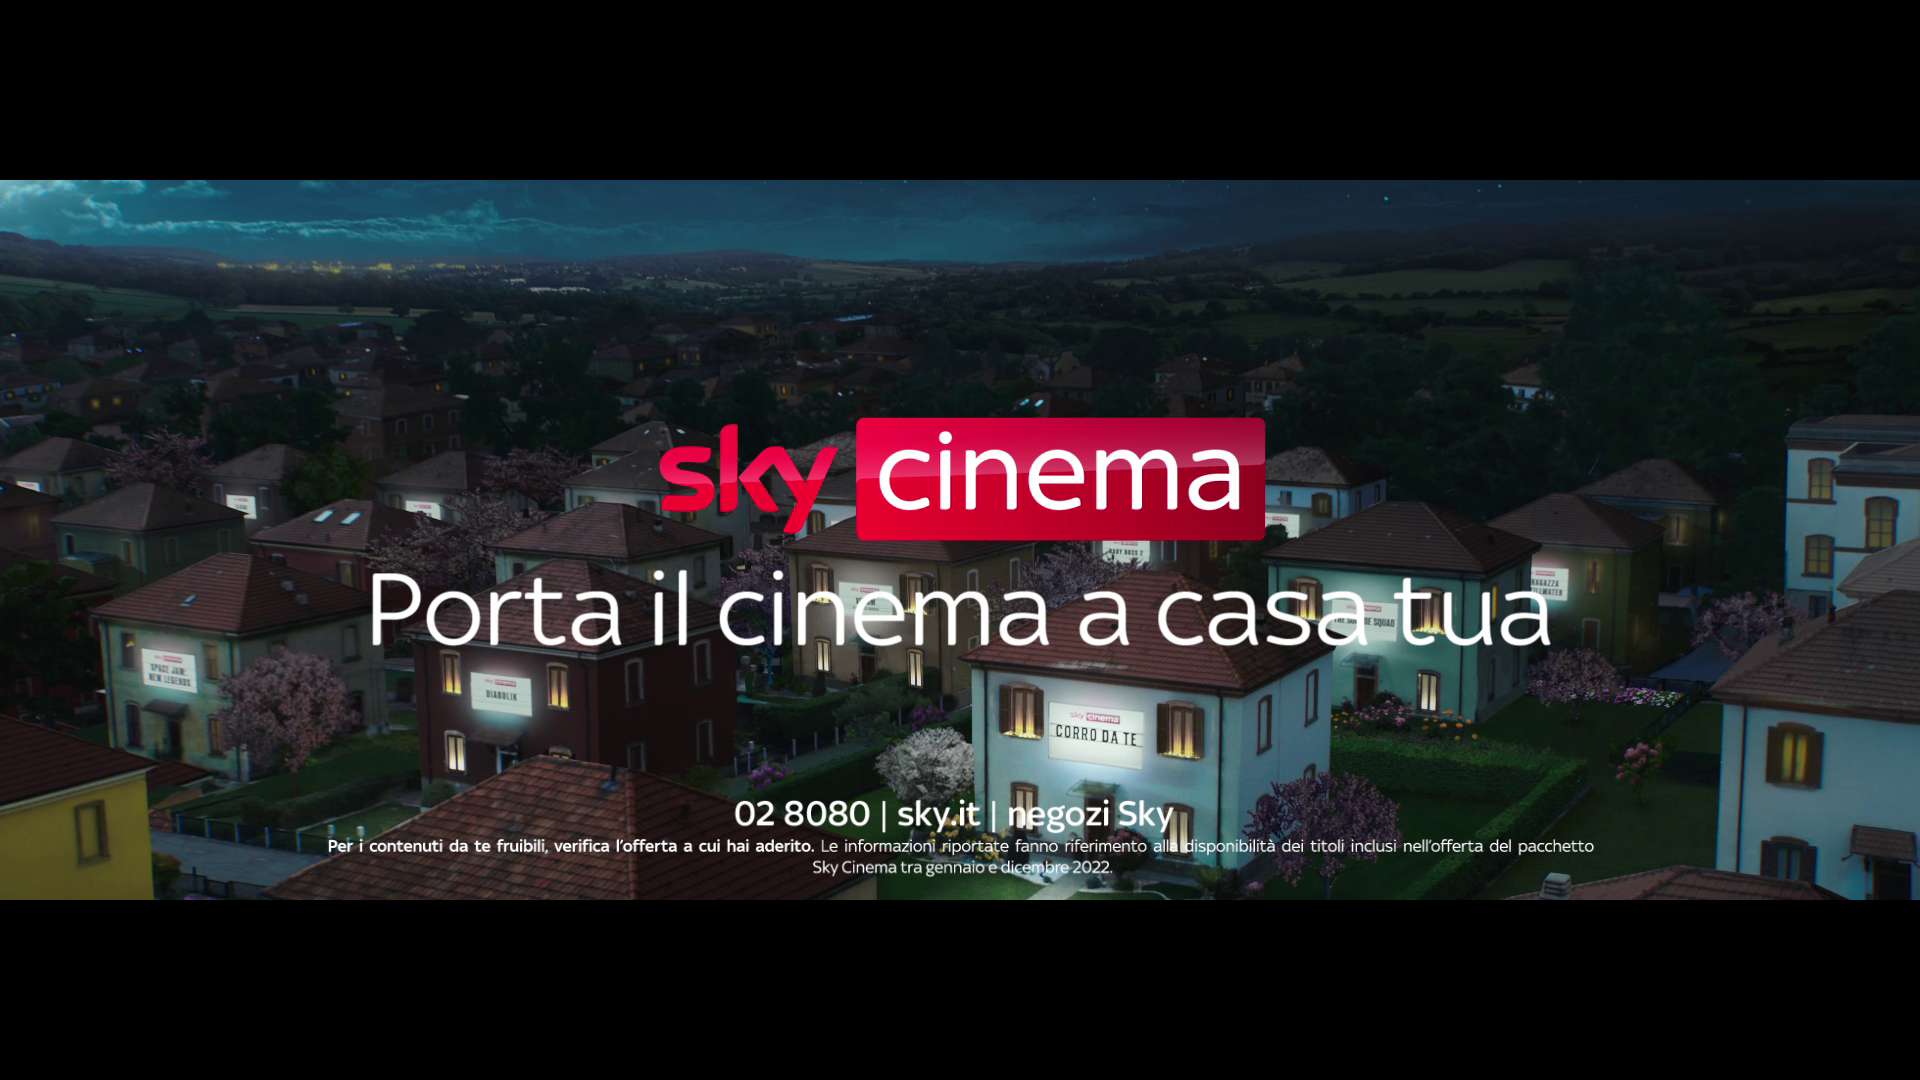 «Sky Cinema porta il cinema a casa tua», la nuova campagna con Pierfrancesco Favino